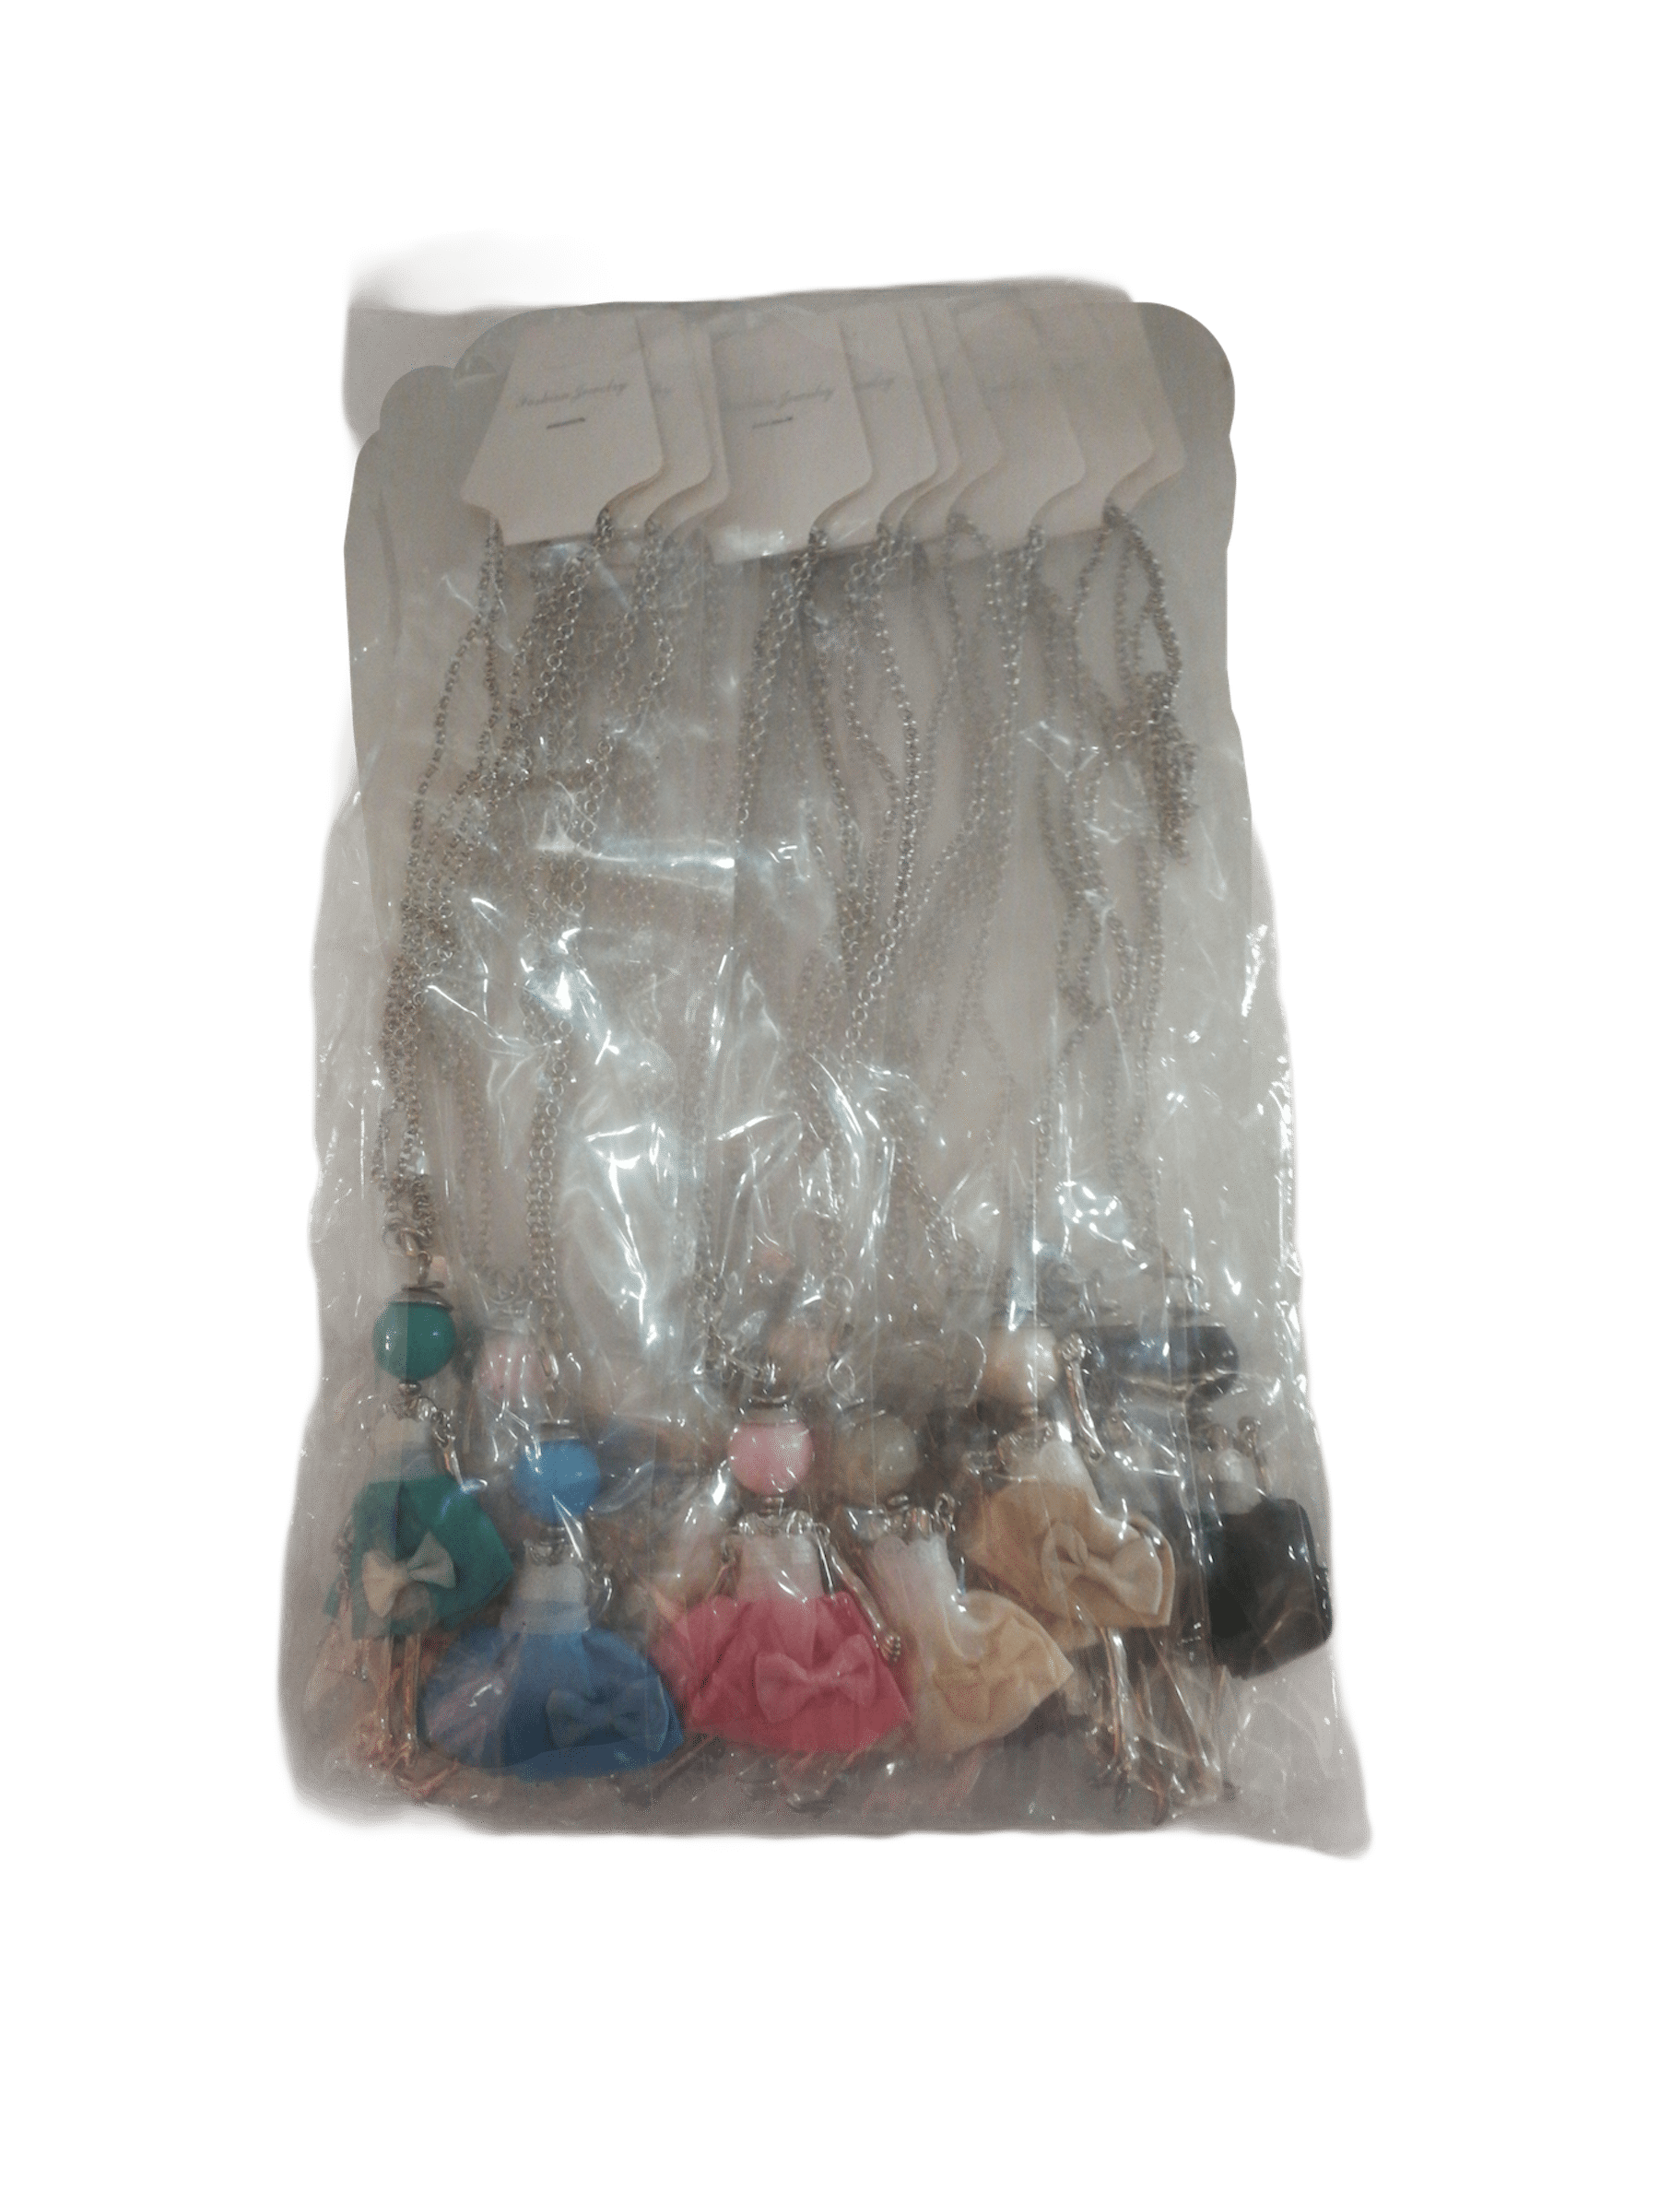 DESTOCKAGE Colliers sautoir pendentif poupée robe (x12)      1,50€/unité | Grossiste-pro